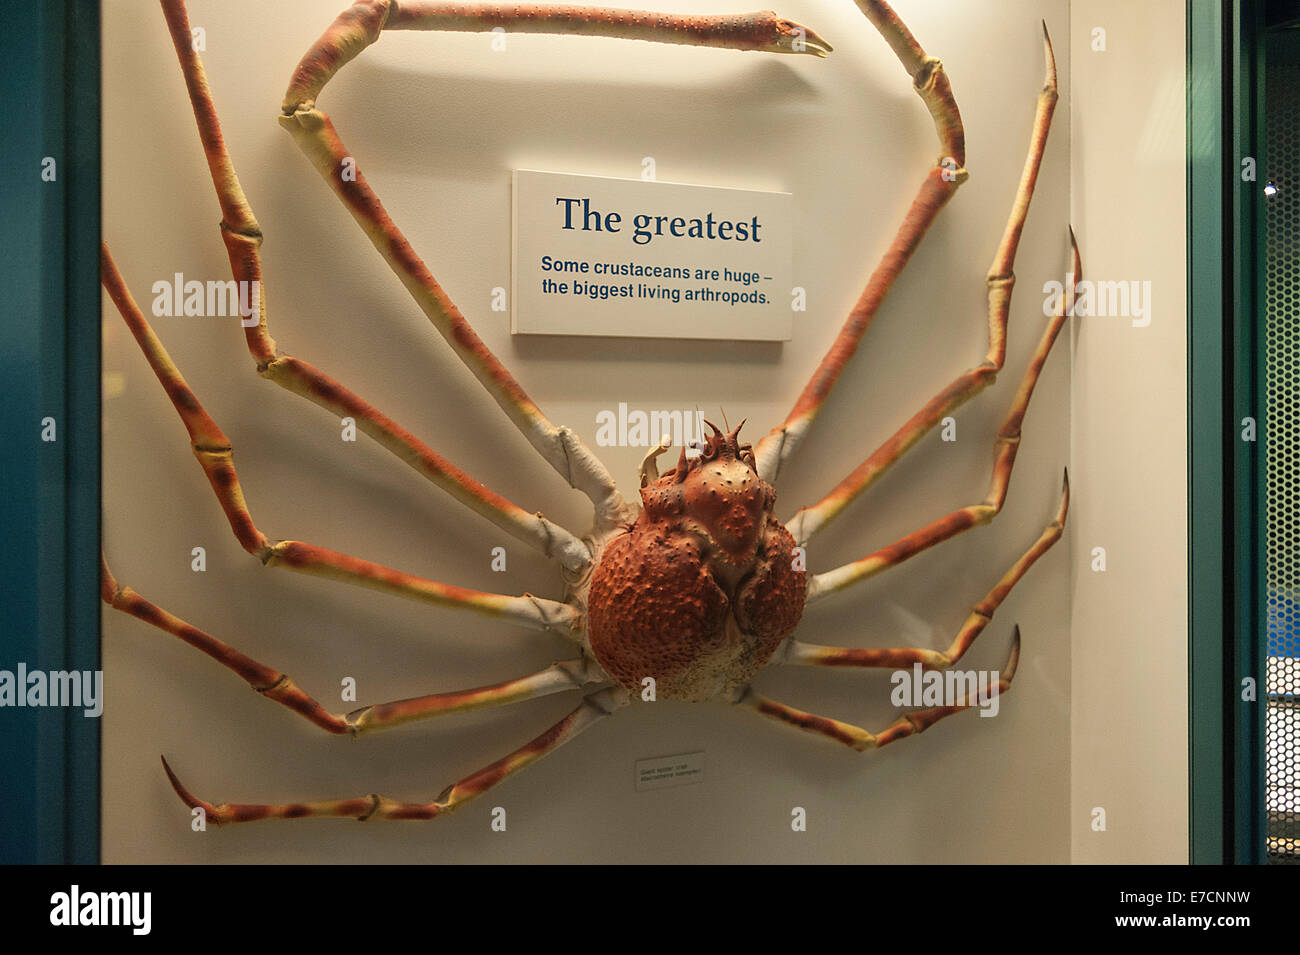 Japanese spider crab, Macrocheira kaempferi, Inachidae, Cruustacea, Natural History Museum, London, UK Stock Photo